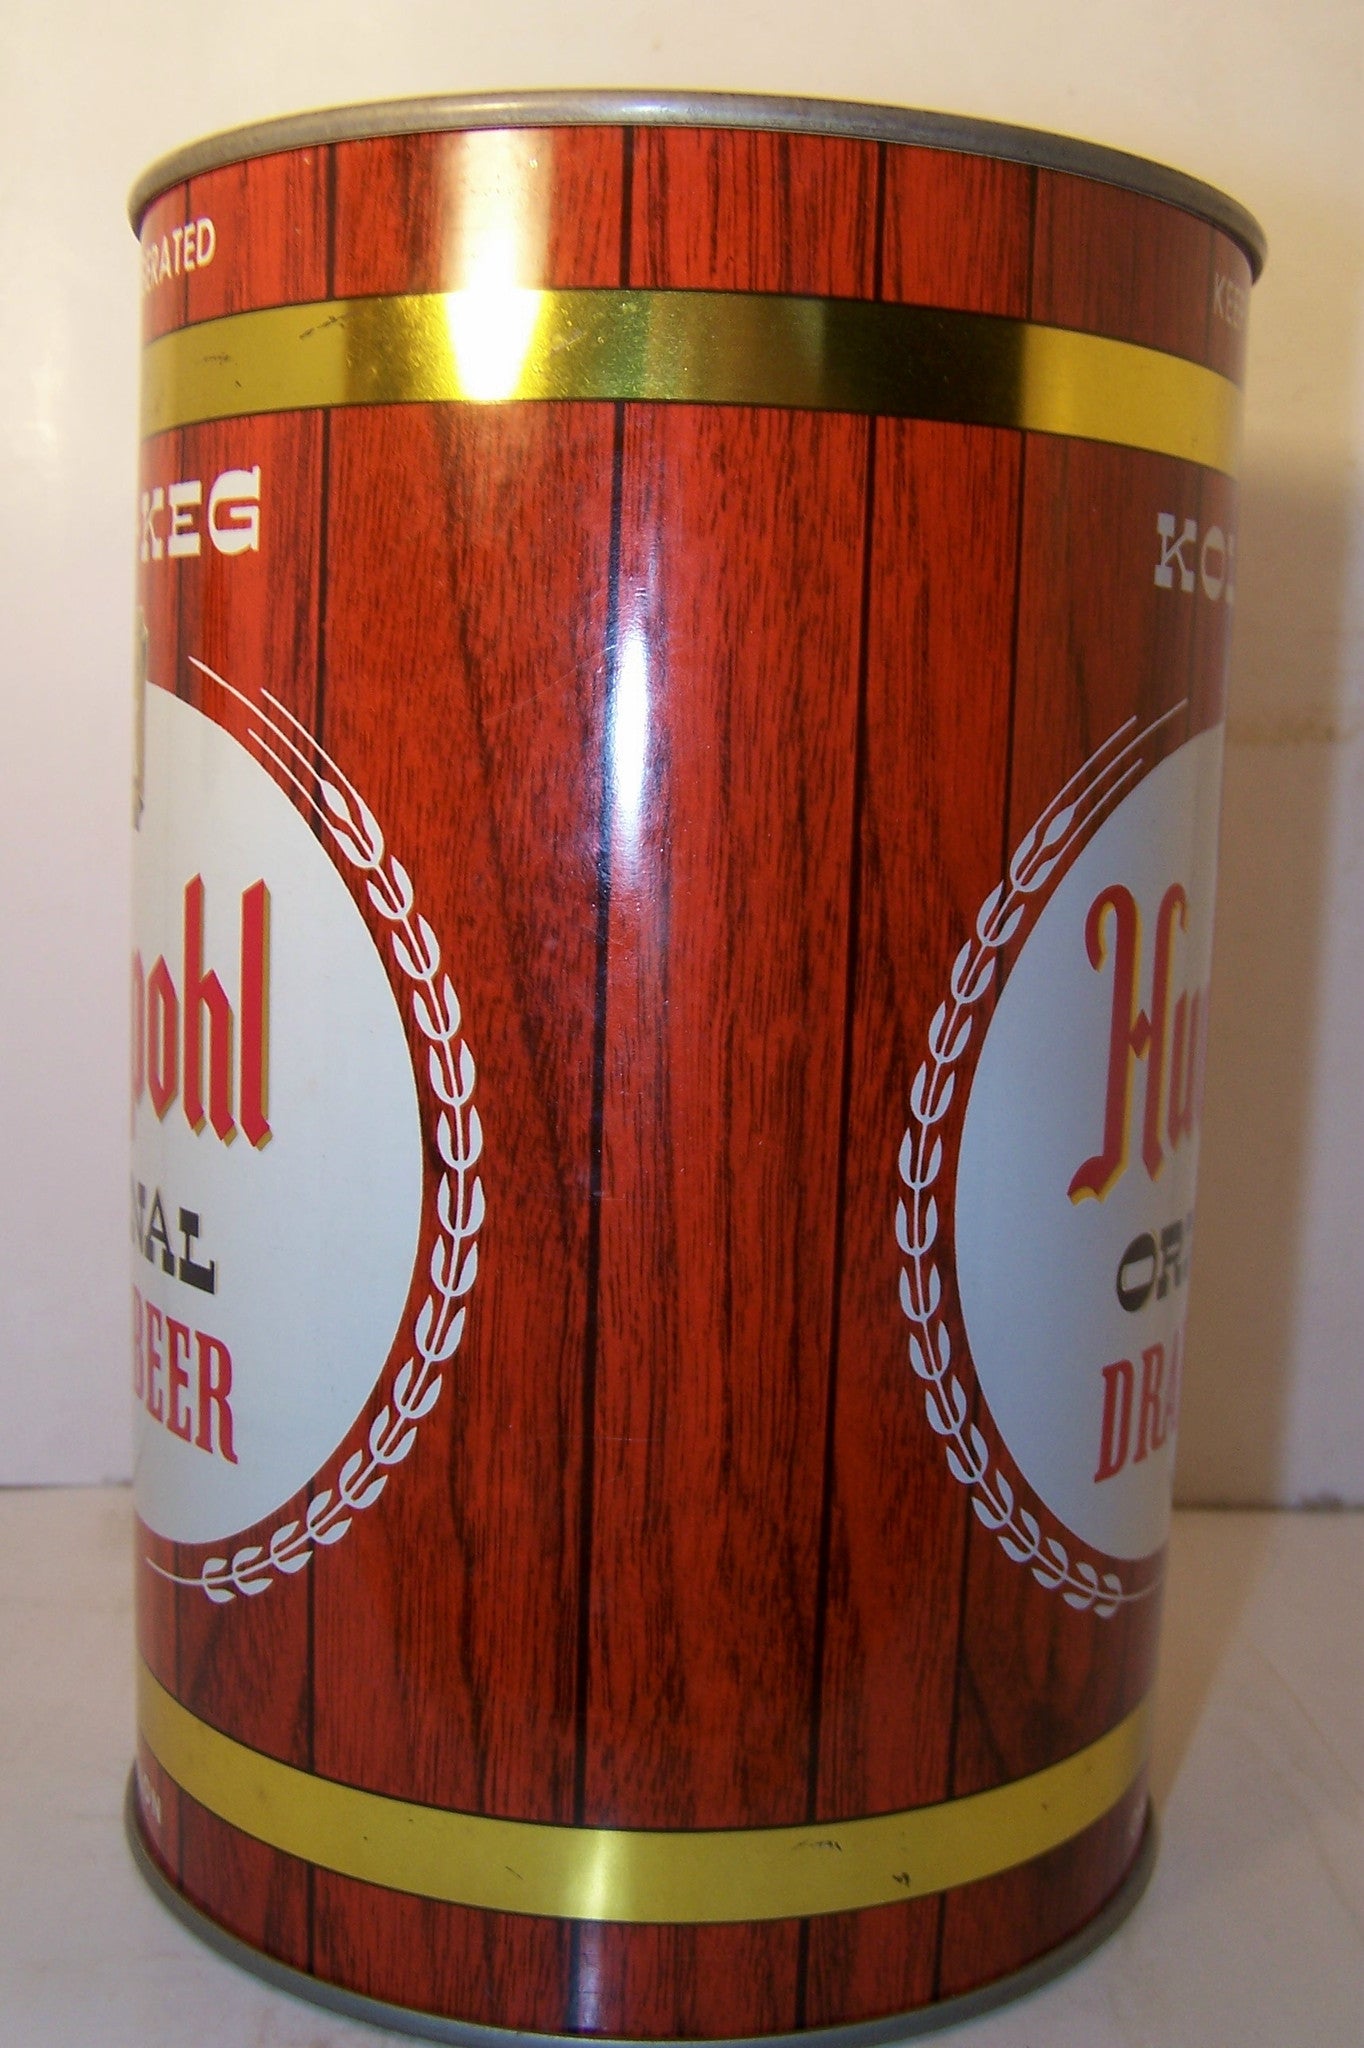 Hudepohl Original Draft Beer, "Tall Can" USBC 245-4 Grade 1/1+